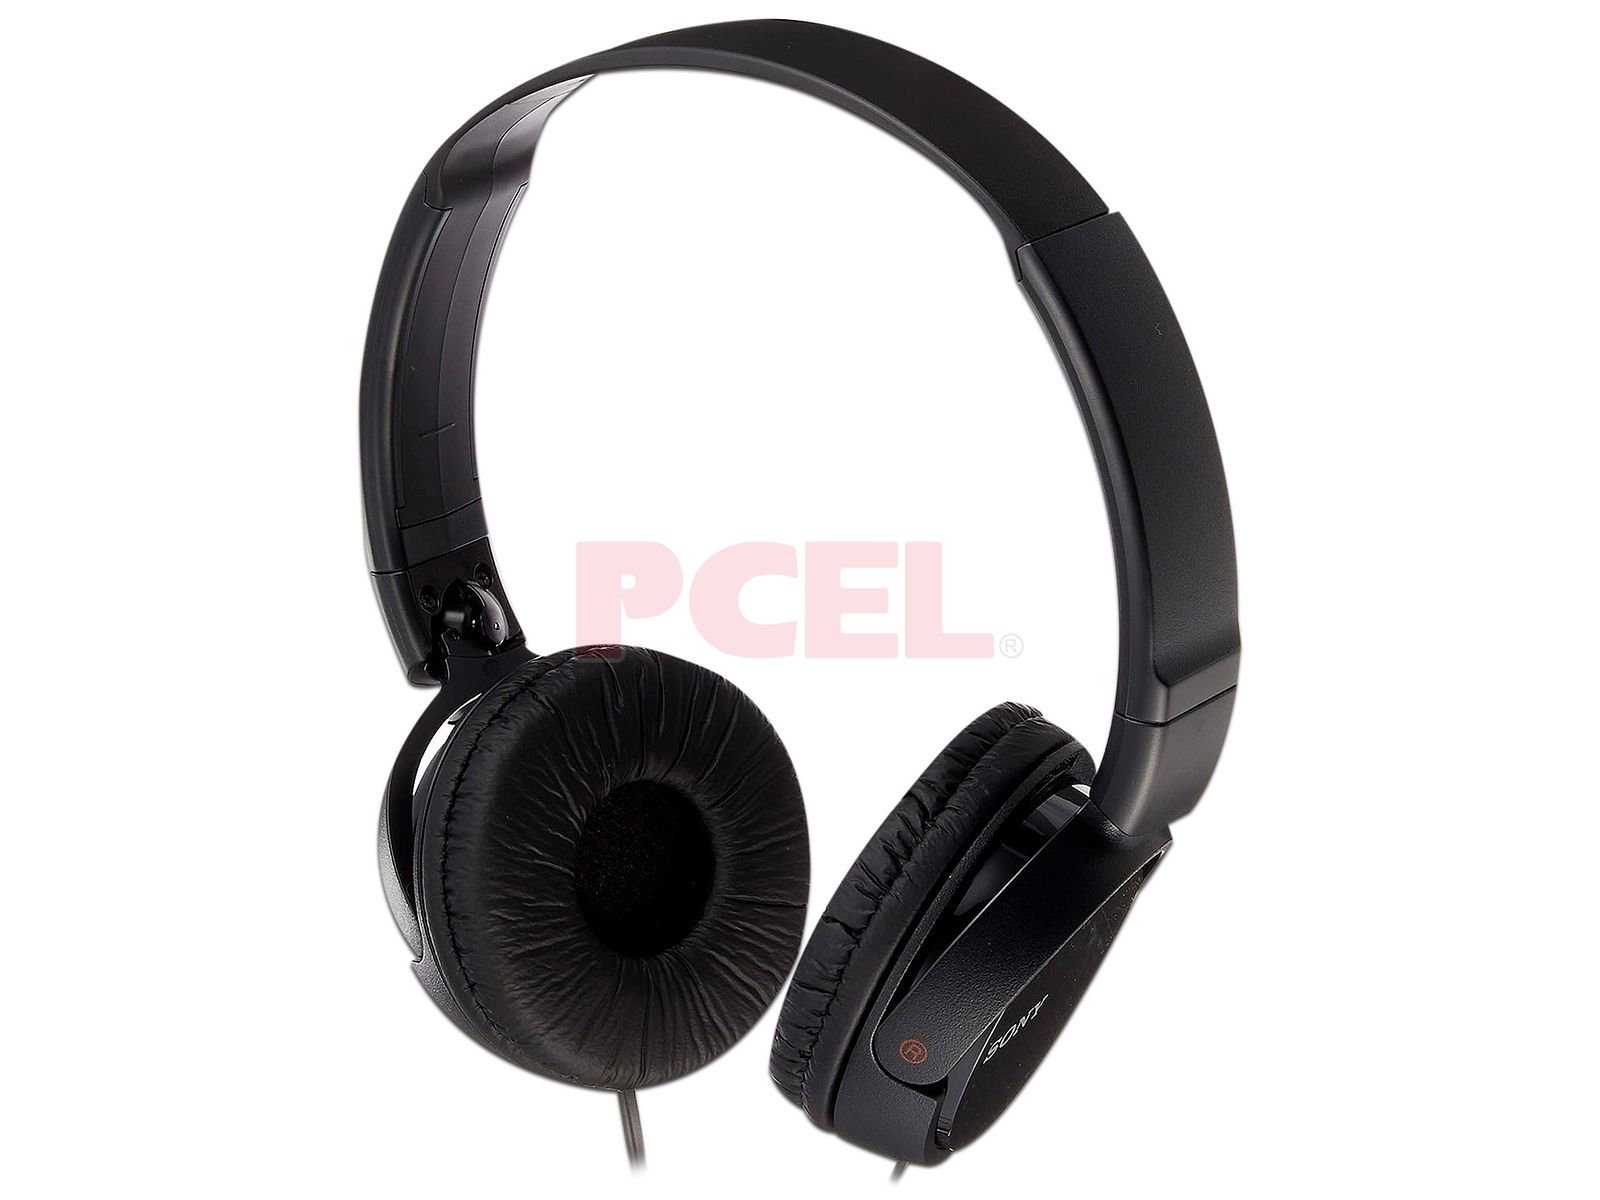 Auriculares estéreo Sony MDRZX110 Con micrófono Negro